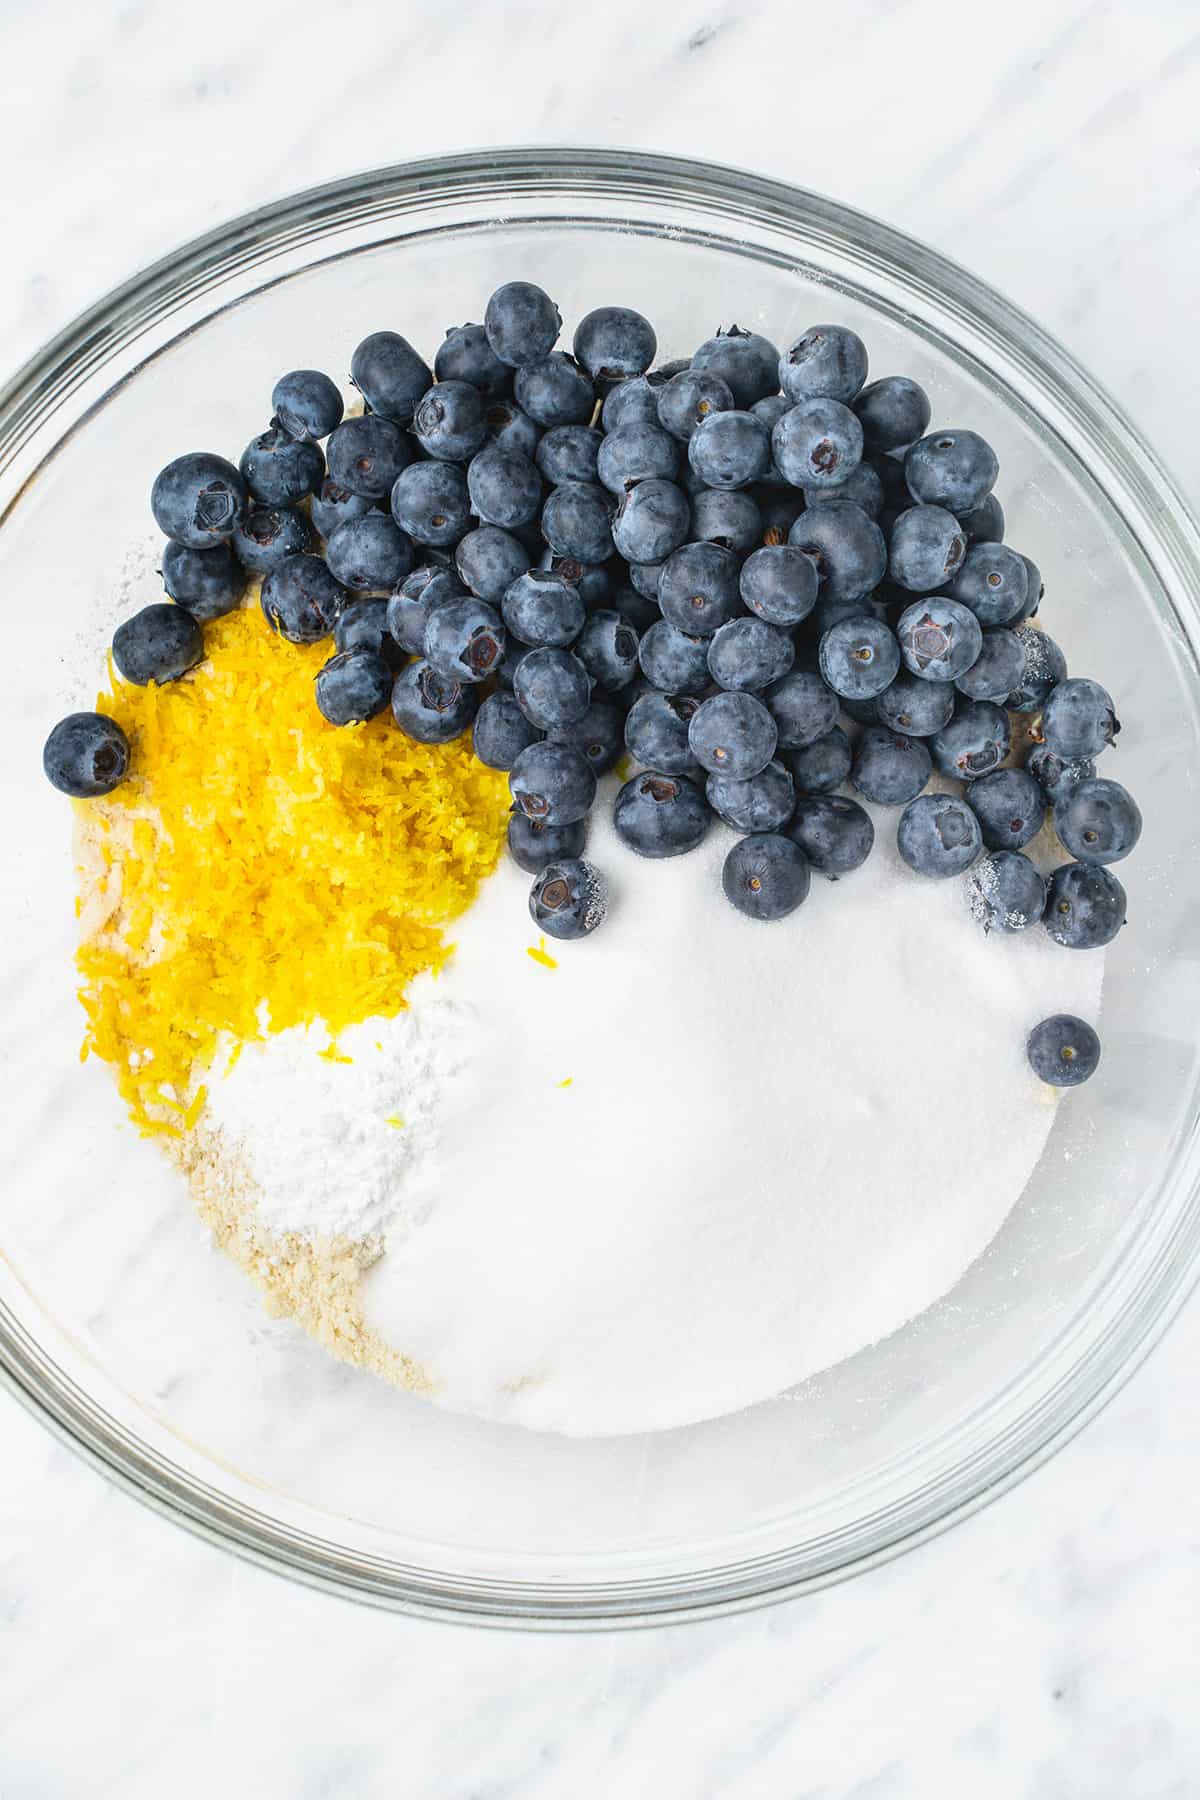 Blueberries, lemon zest, salt, sugar, and baking powder added to flour-butter mixture.